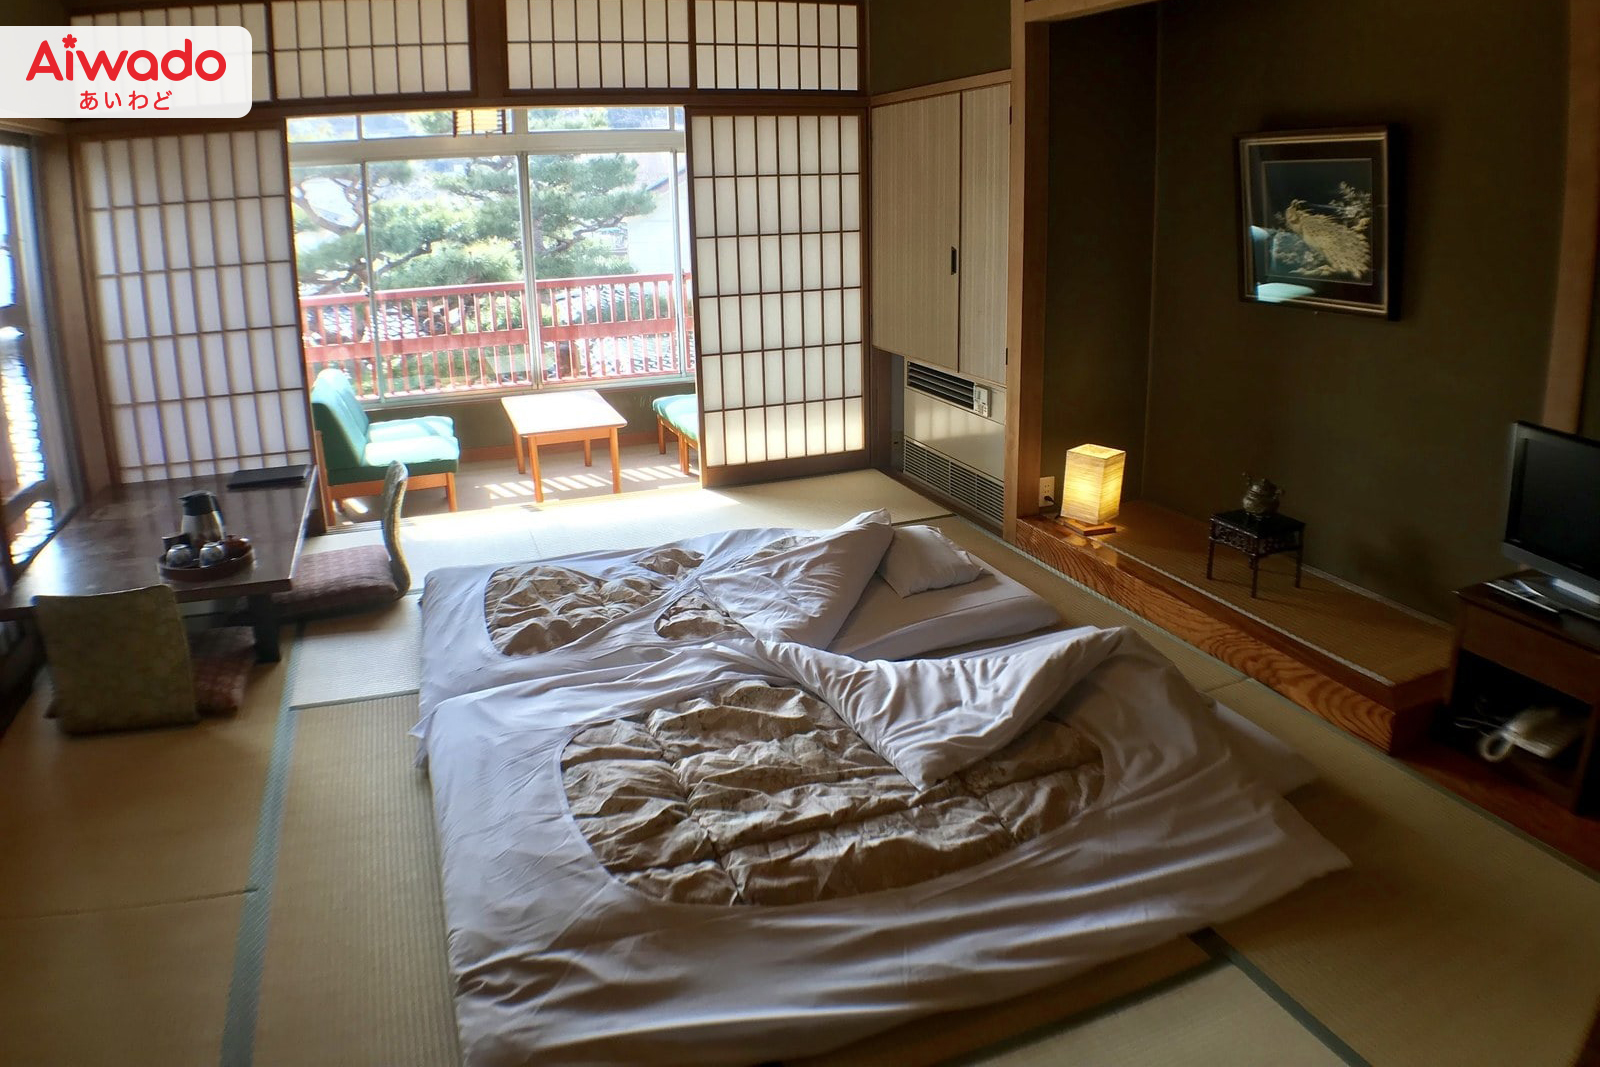 Lợi ích sức khỏe từ thói quen ngủ dưới sàn nhà của người Nhật